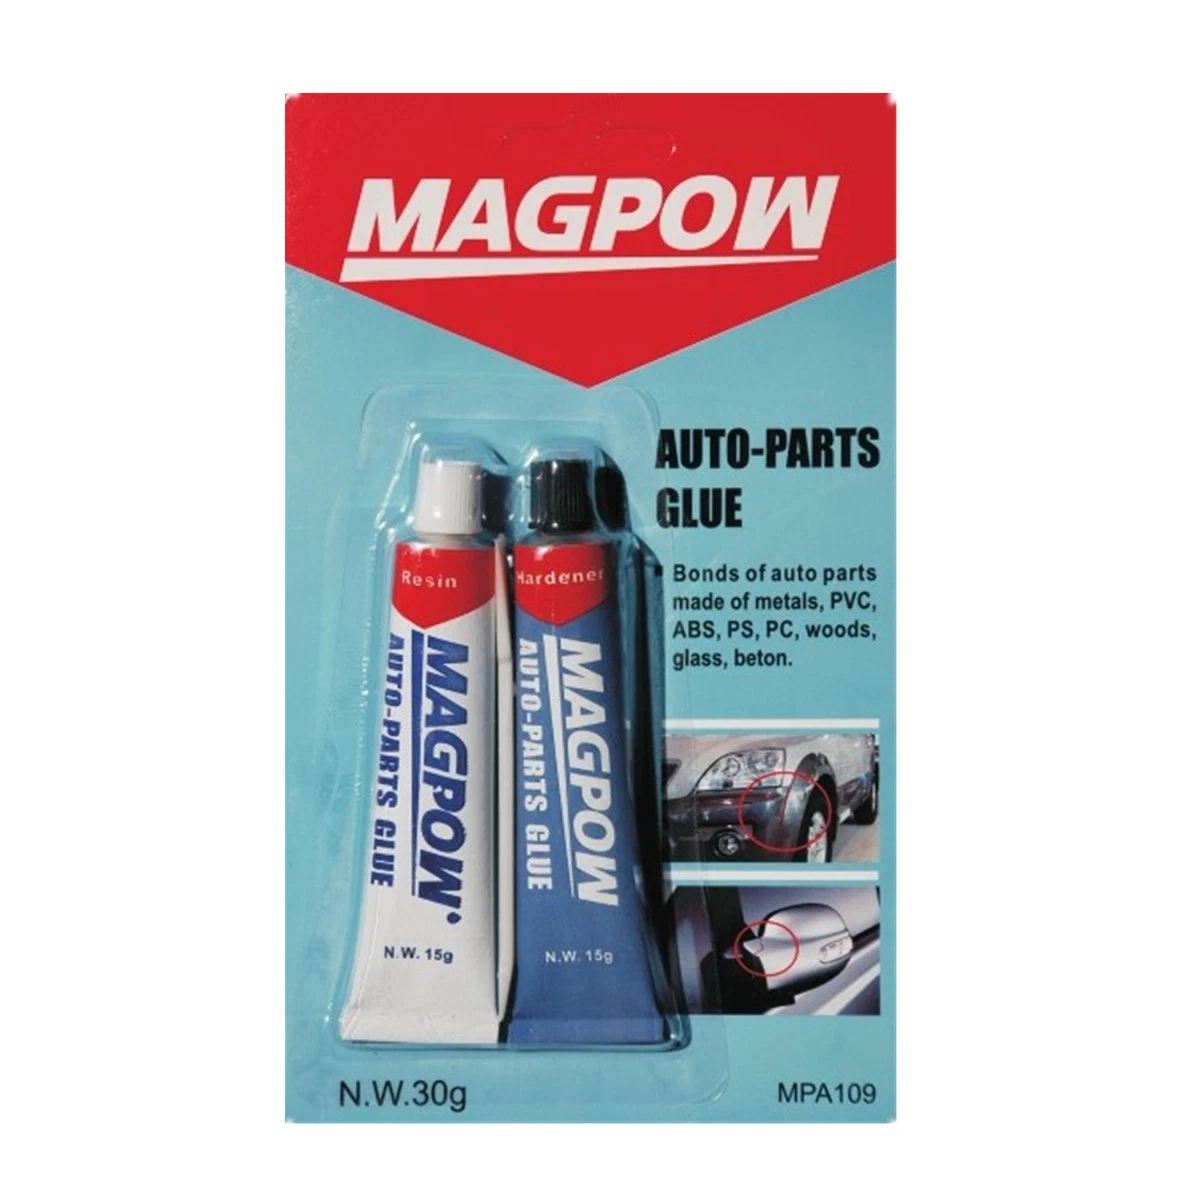 Magpow Ab Gum Epoxy Acero adhesivo Epoxy resina Auto Parts Pegamento